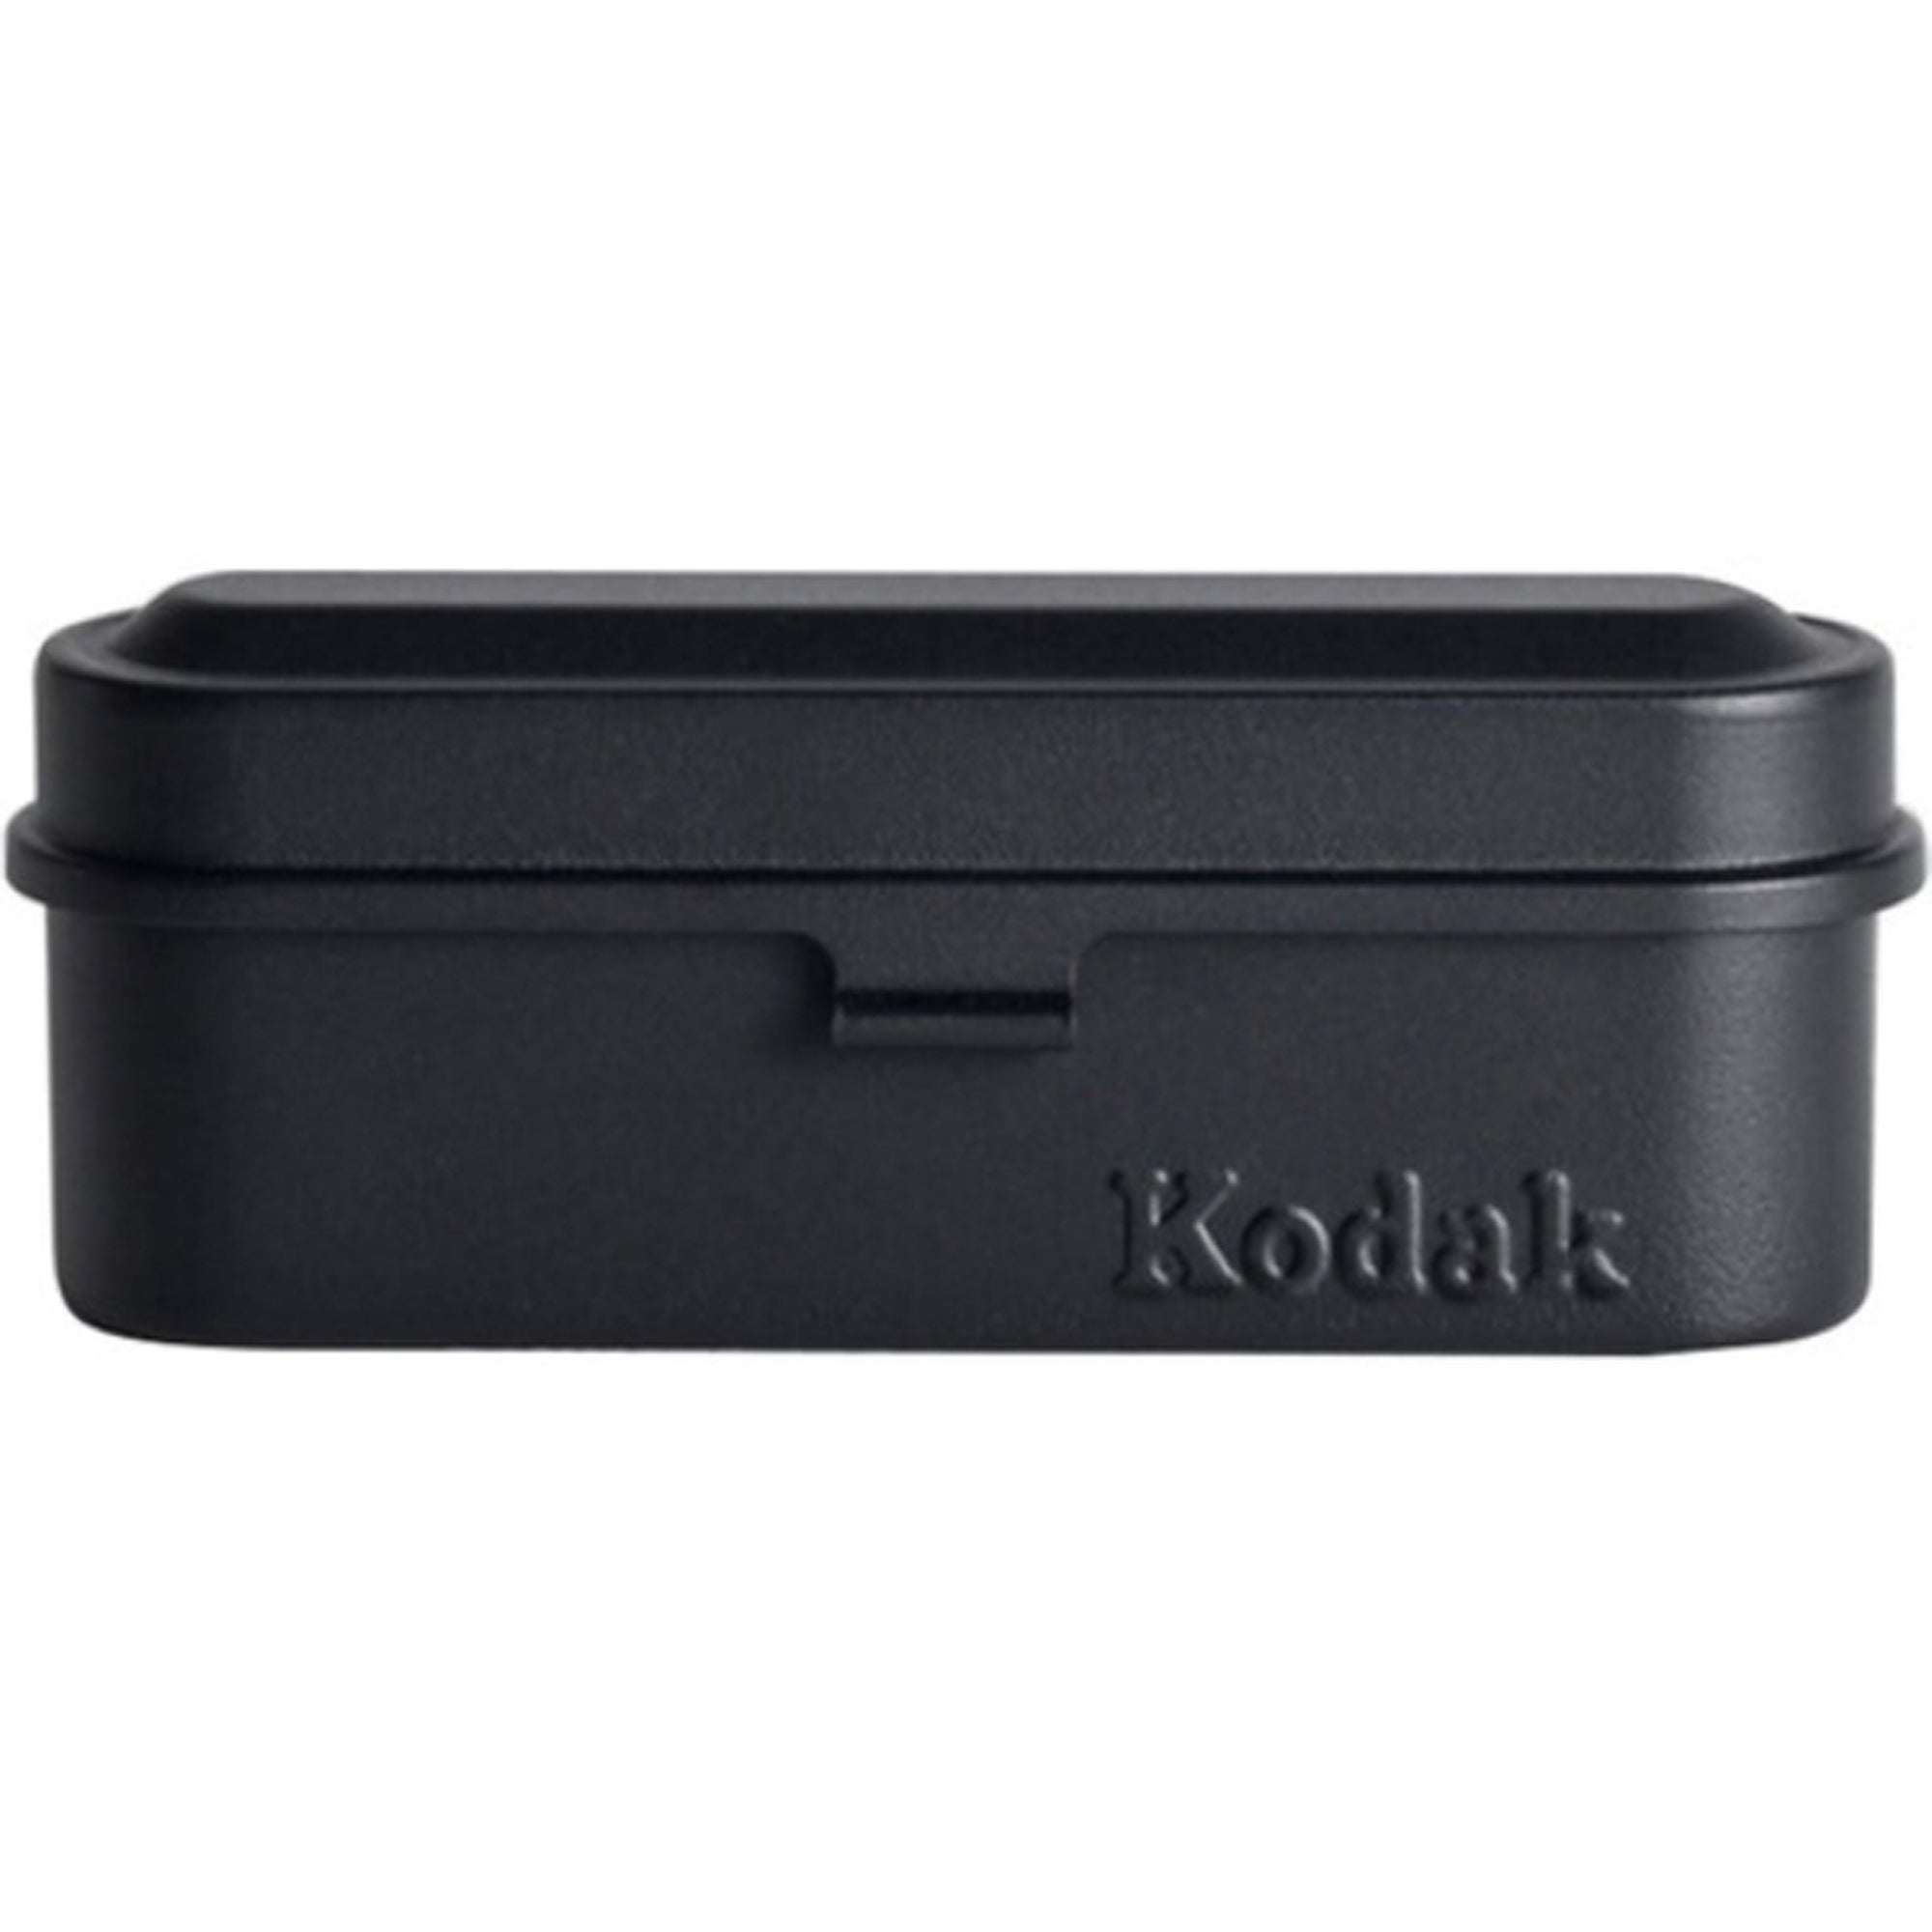 Kodak Steel 135mm Film Case (Black Lid/ Black Body)